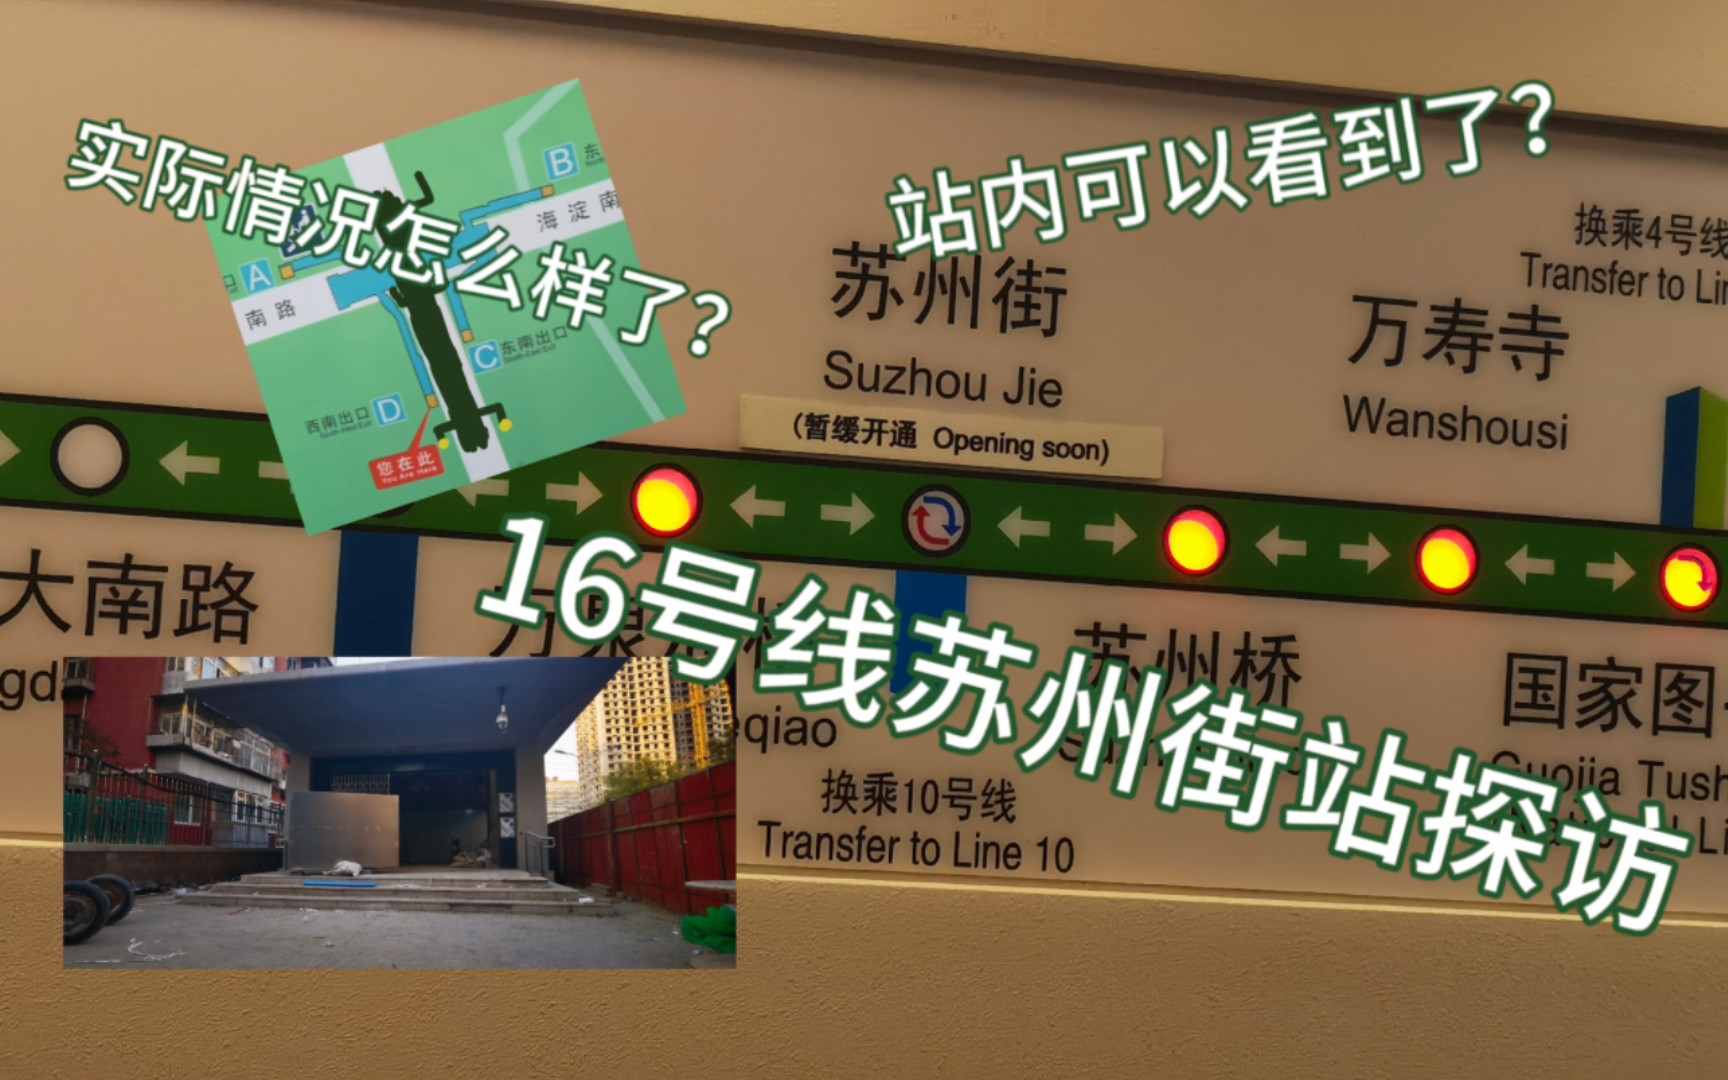 实际探访北京地铁16号线苏州街站